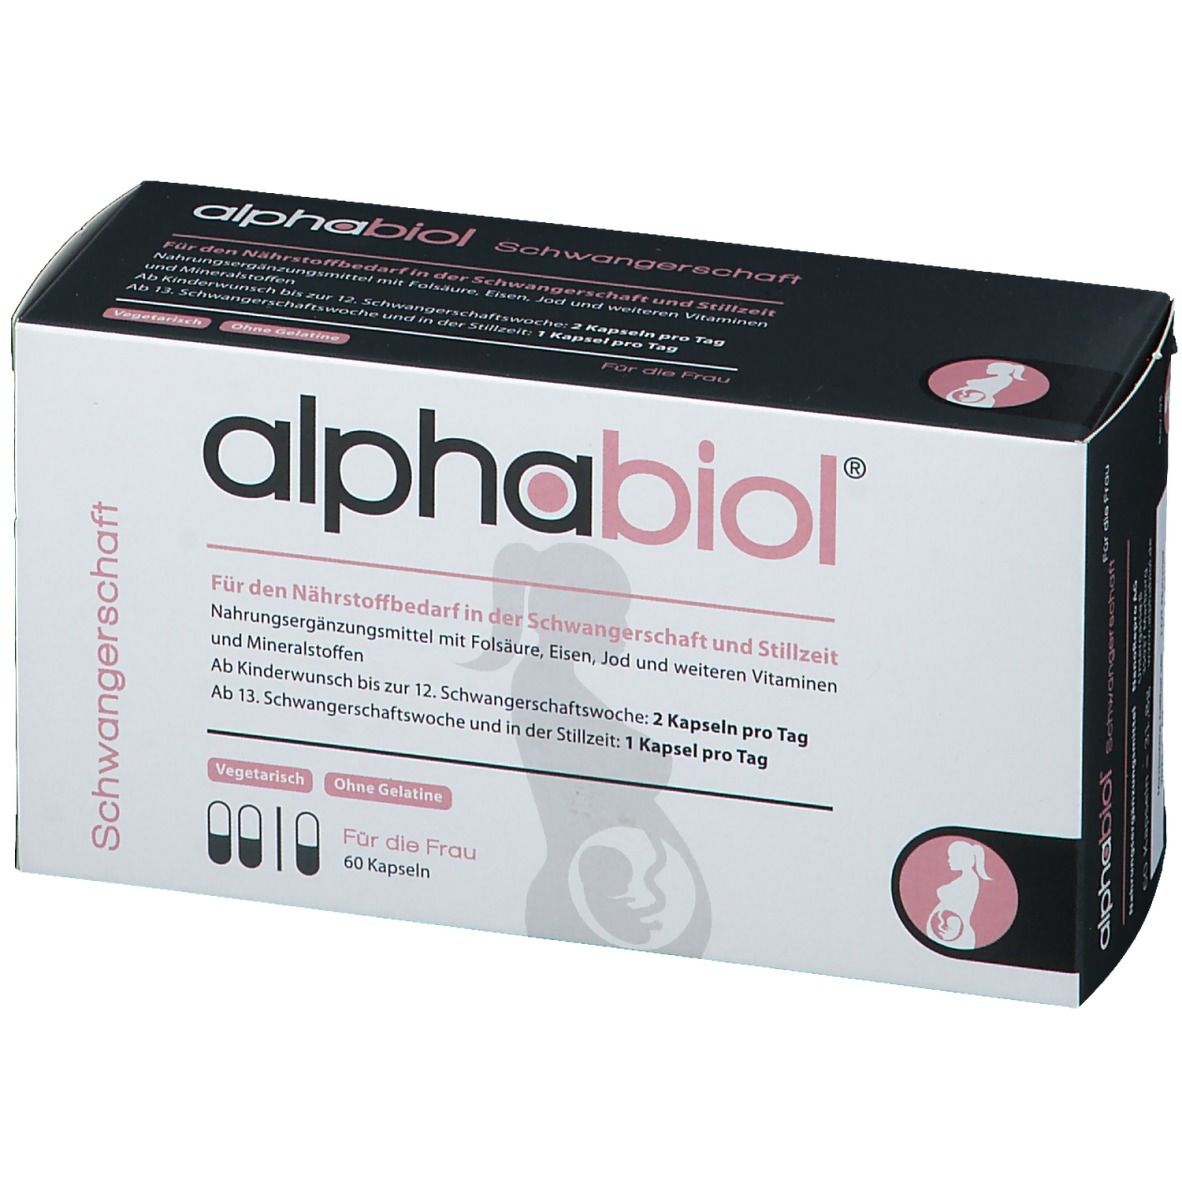 alphabiol® Schwangerschaft für die Frau